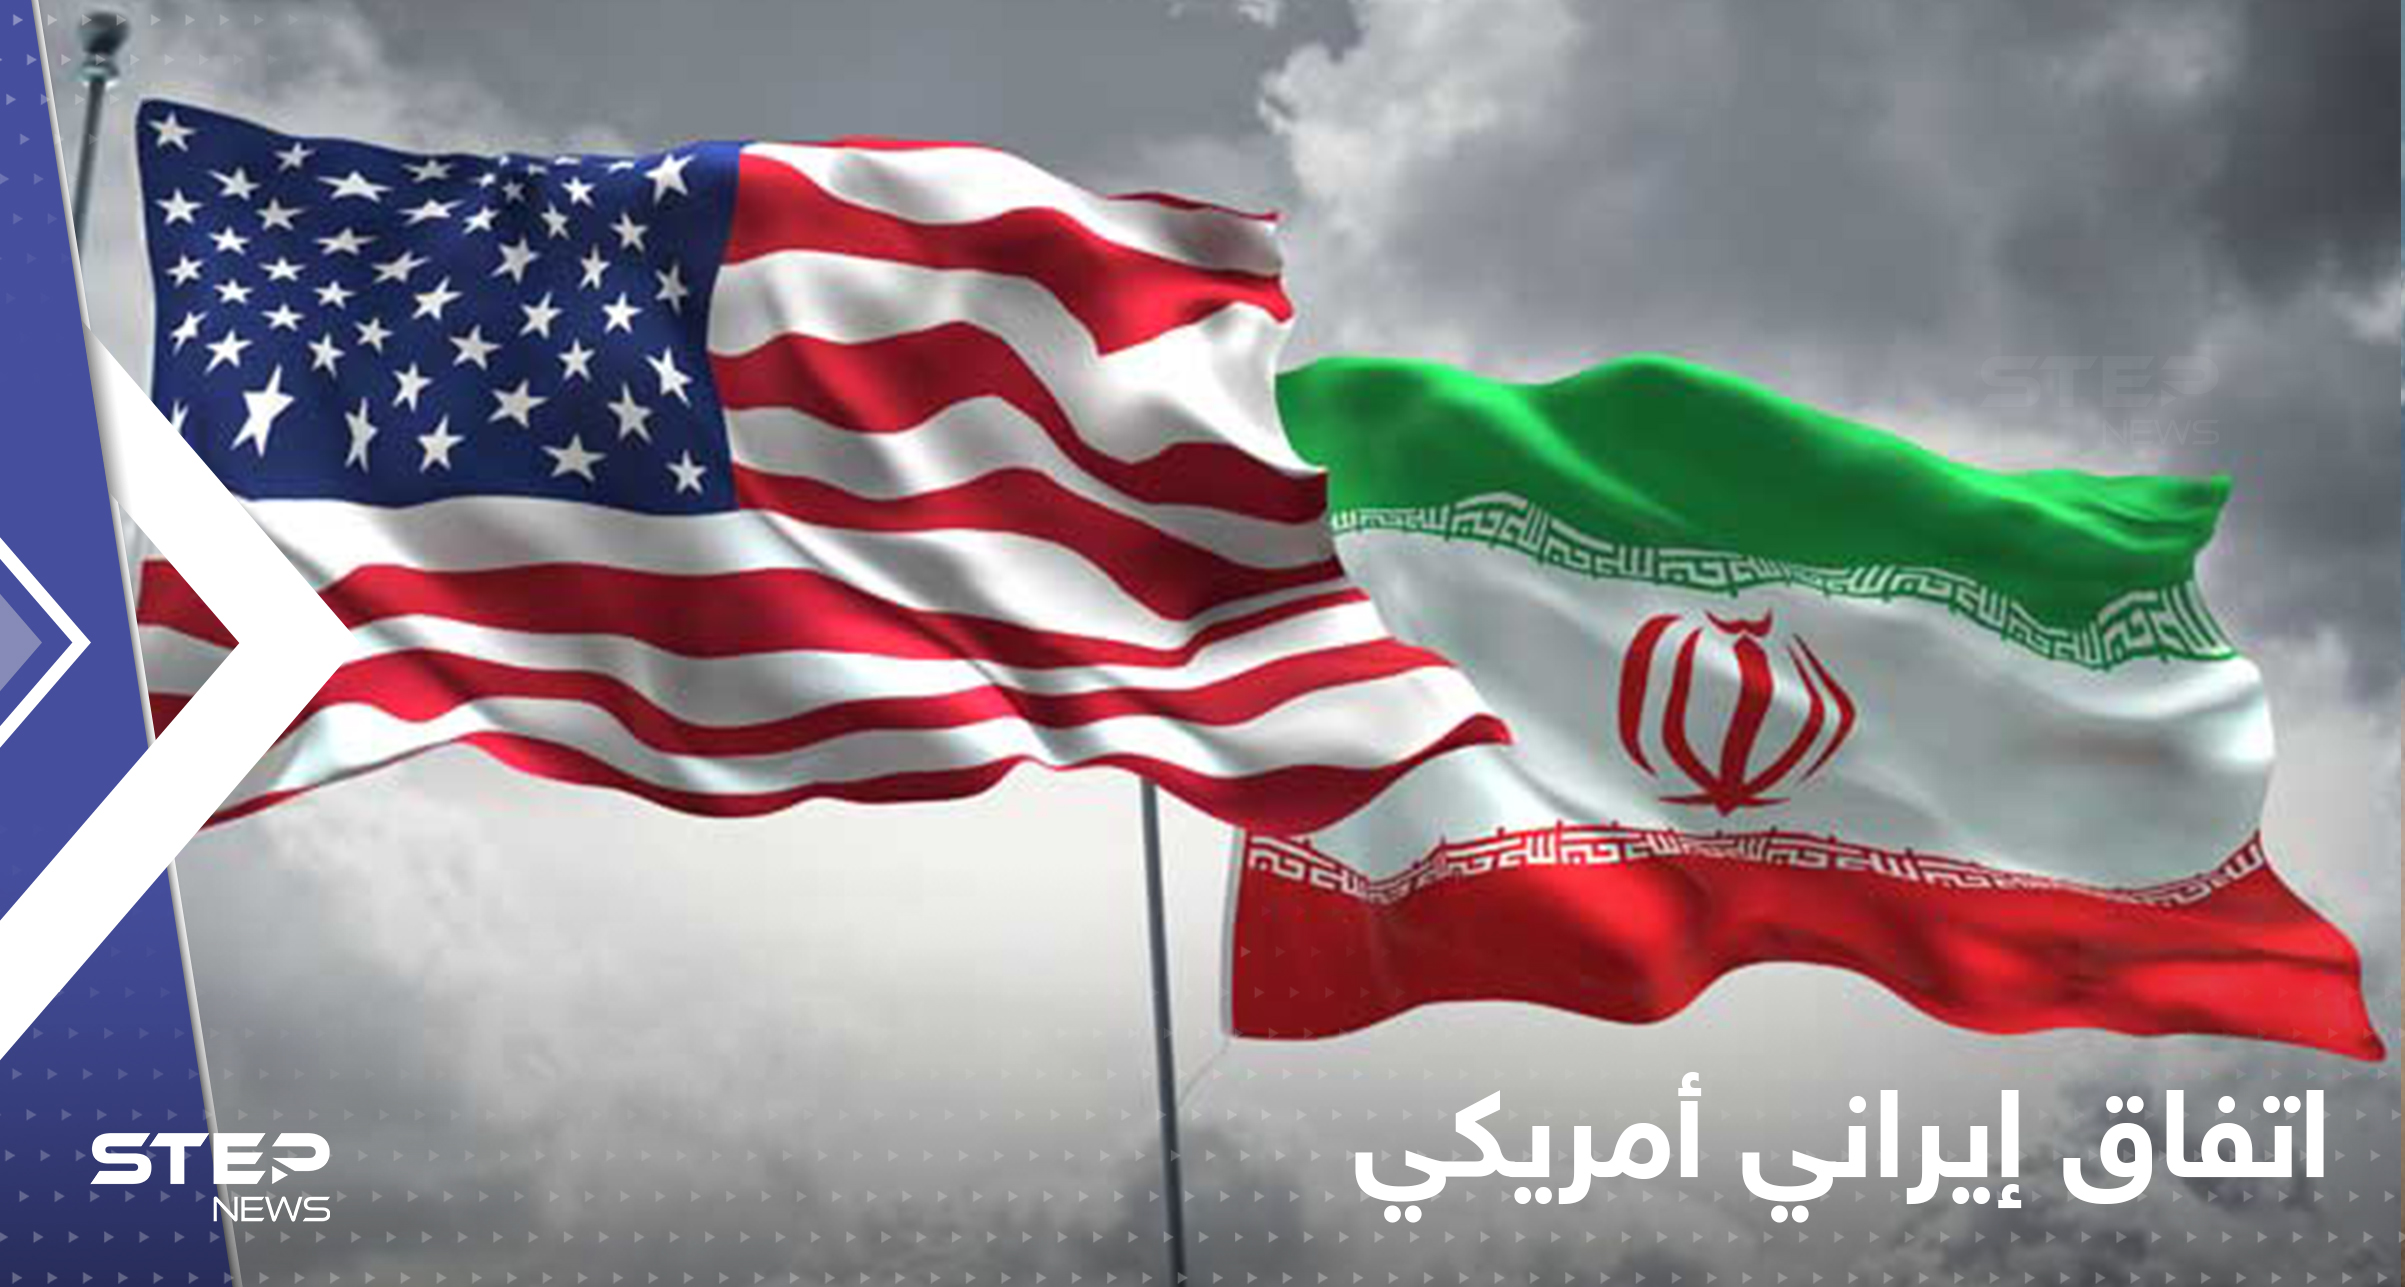 عاجل|| تسريبات عن اتفاق وشيك بين إيران والولايات المتحدة والبيت الأبيض يعلق